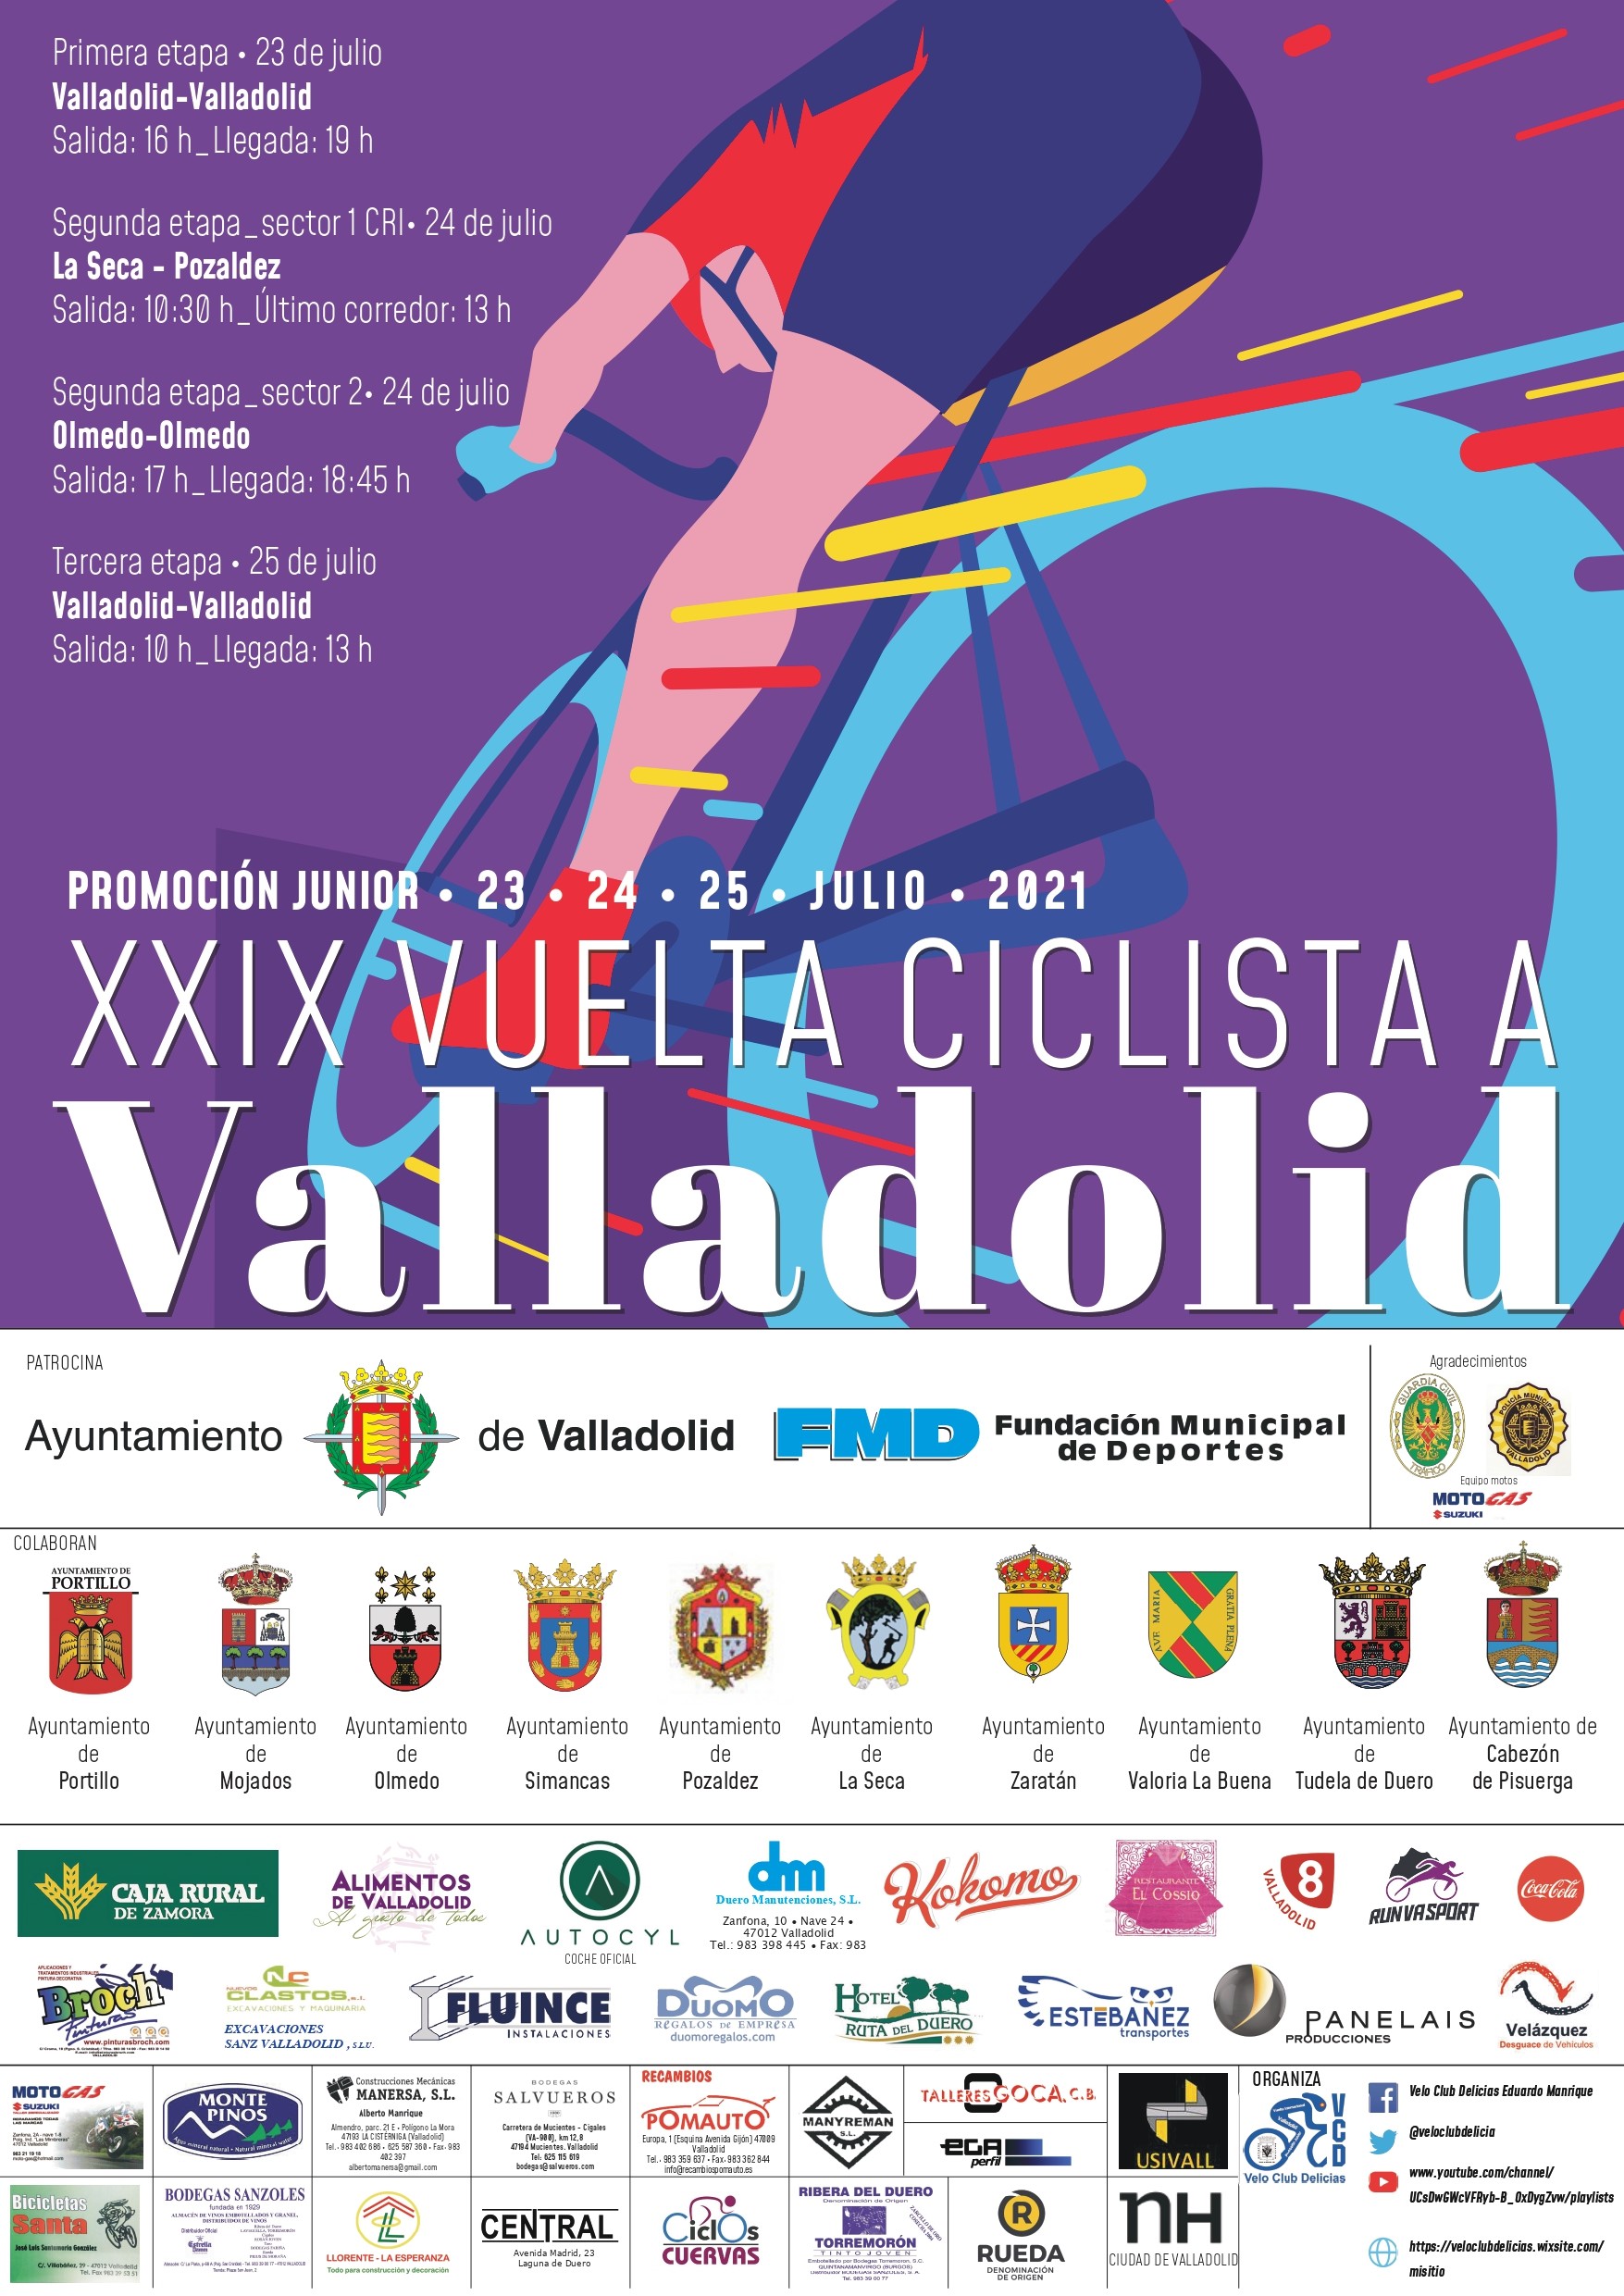 Foto del XXIX Vuelta Ciclista a Valladolid Promoción Junior